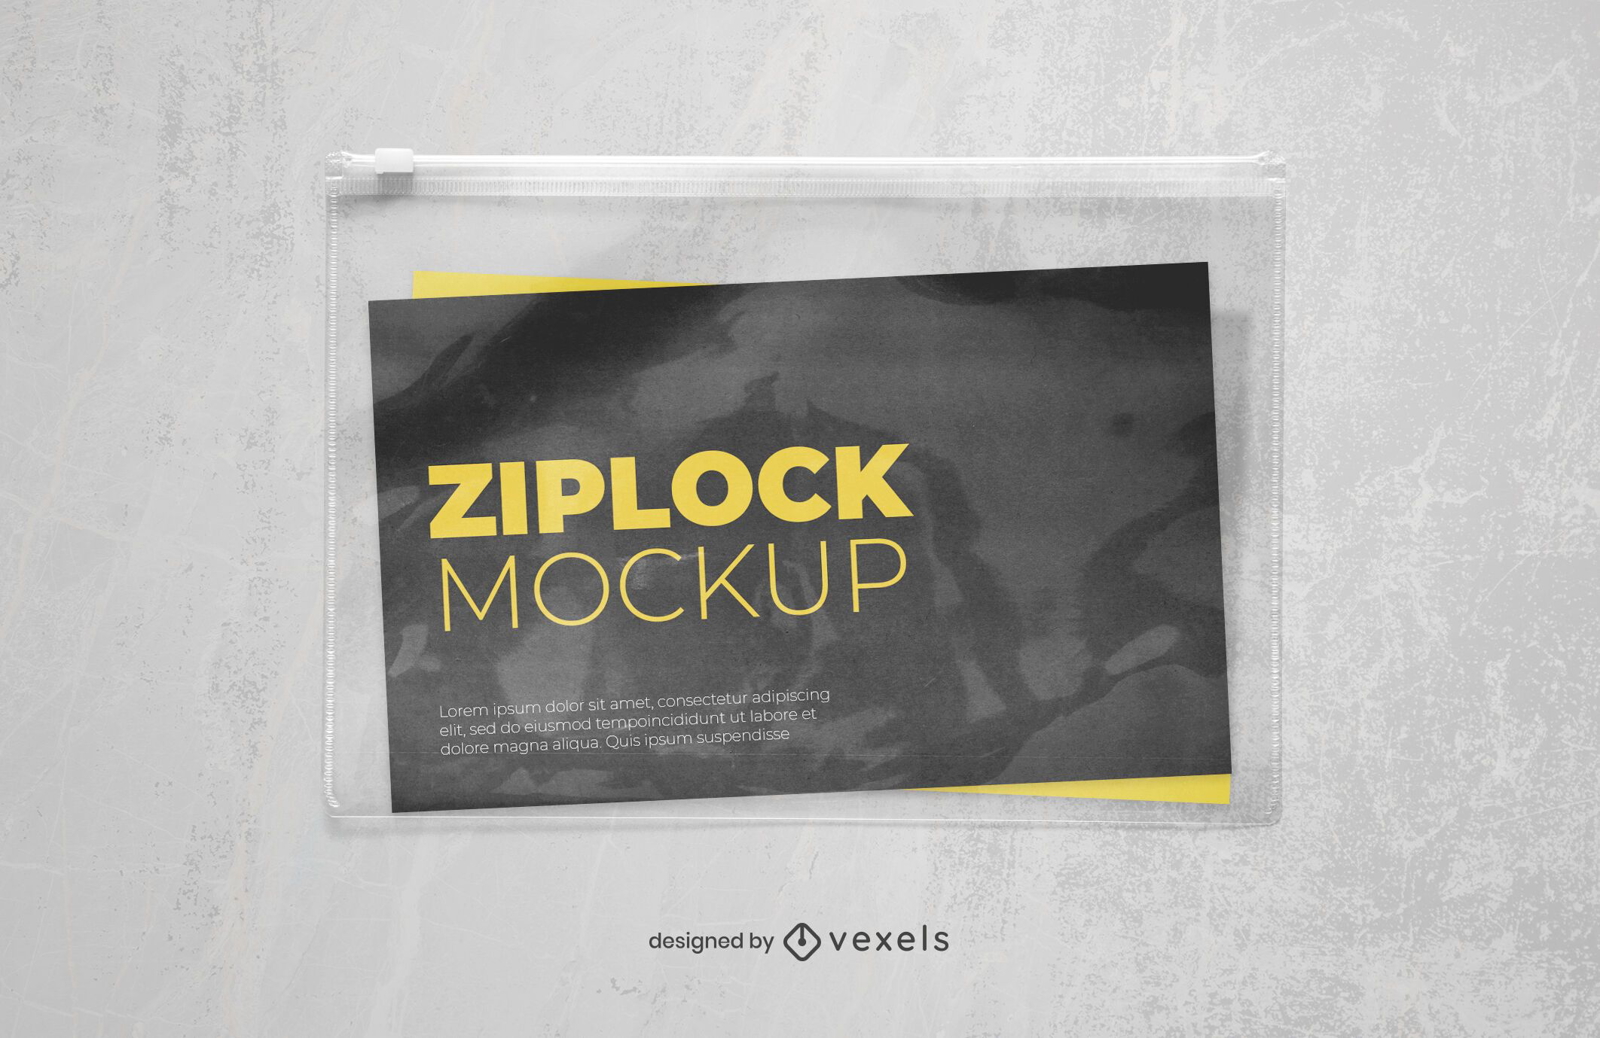 diseño de maqueta de plástico ziplock